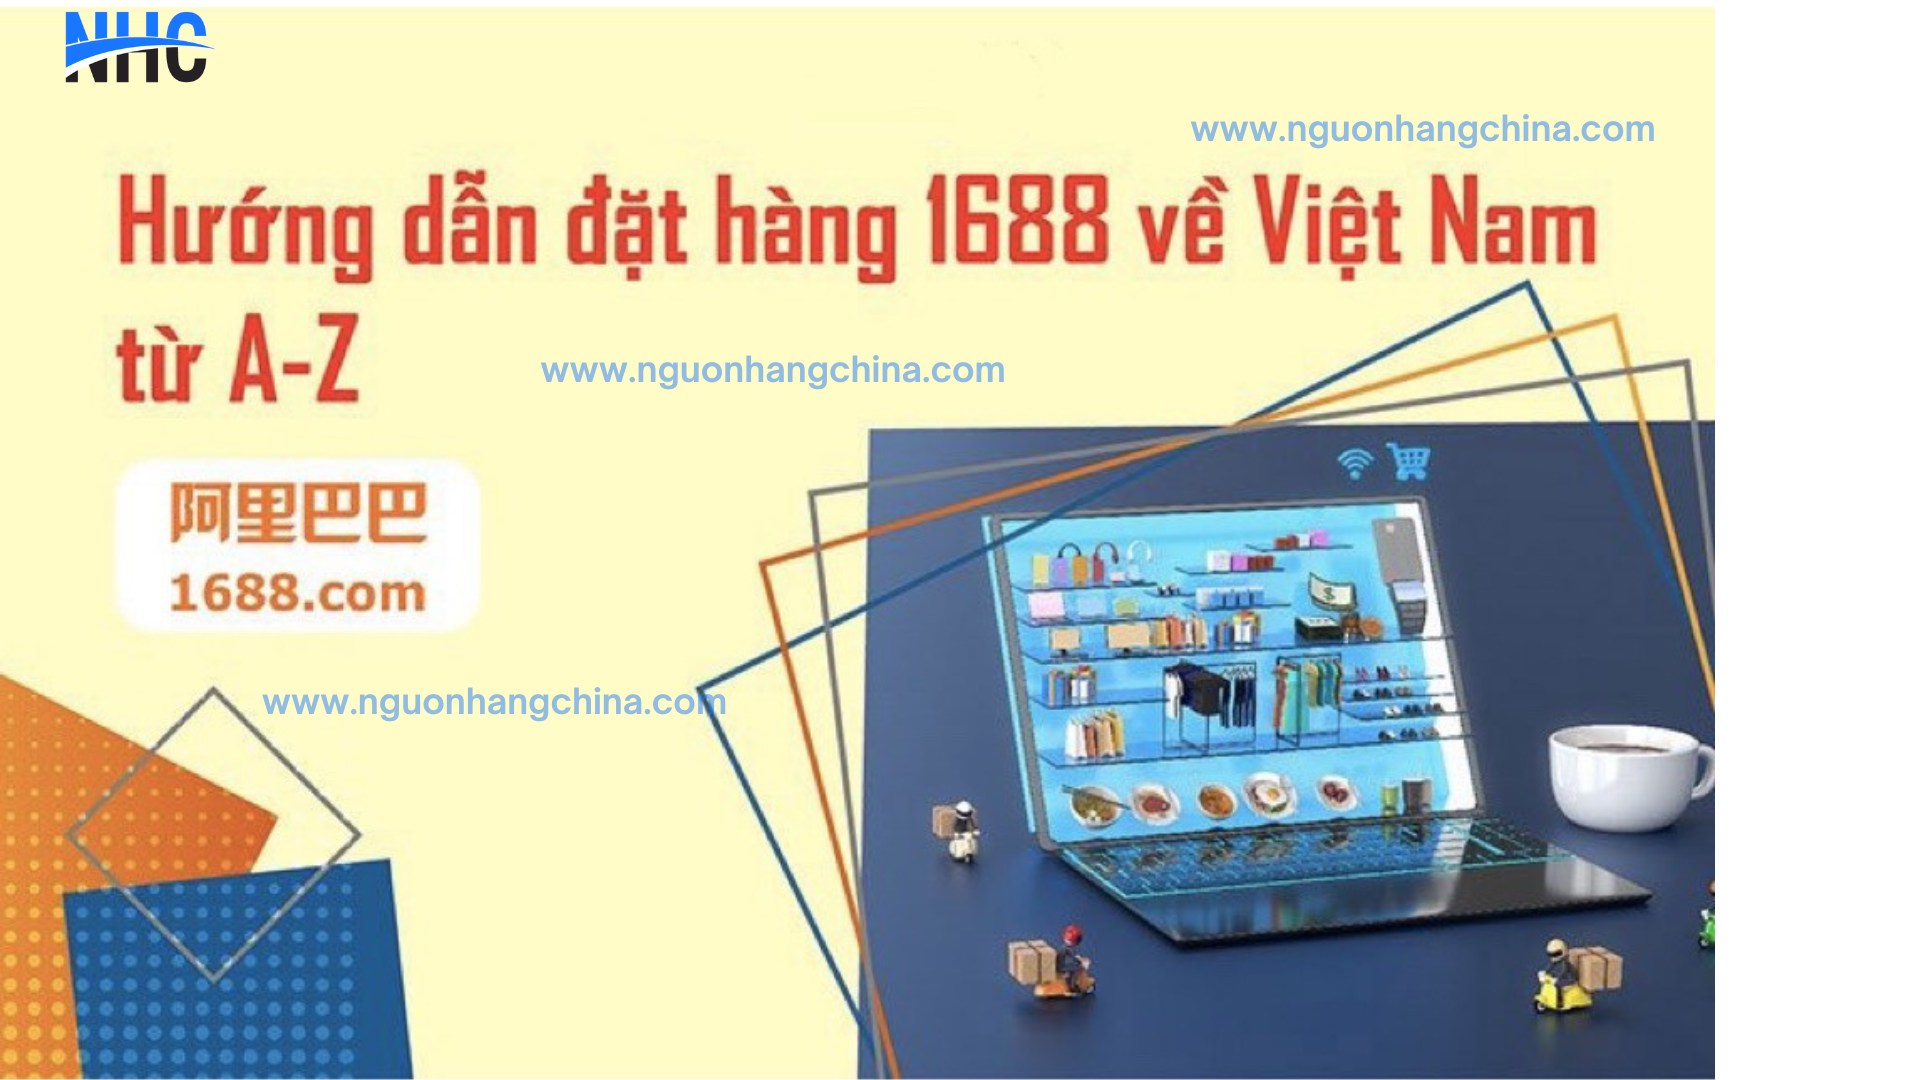 www.nguonhangchina.com 3